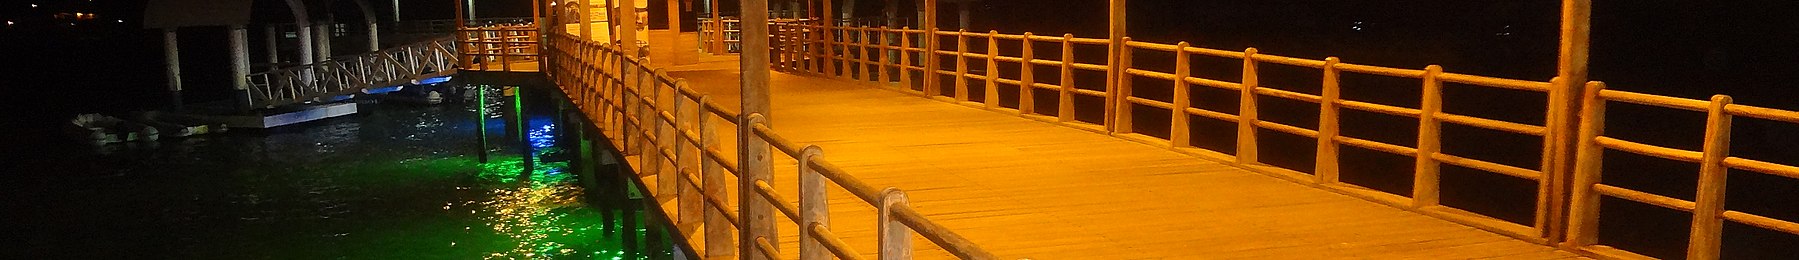 Puerto Ayoran banneri Dock.JPG